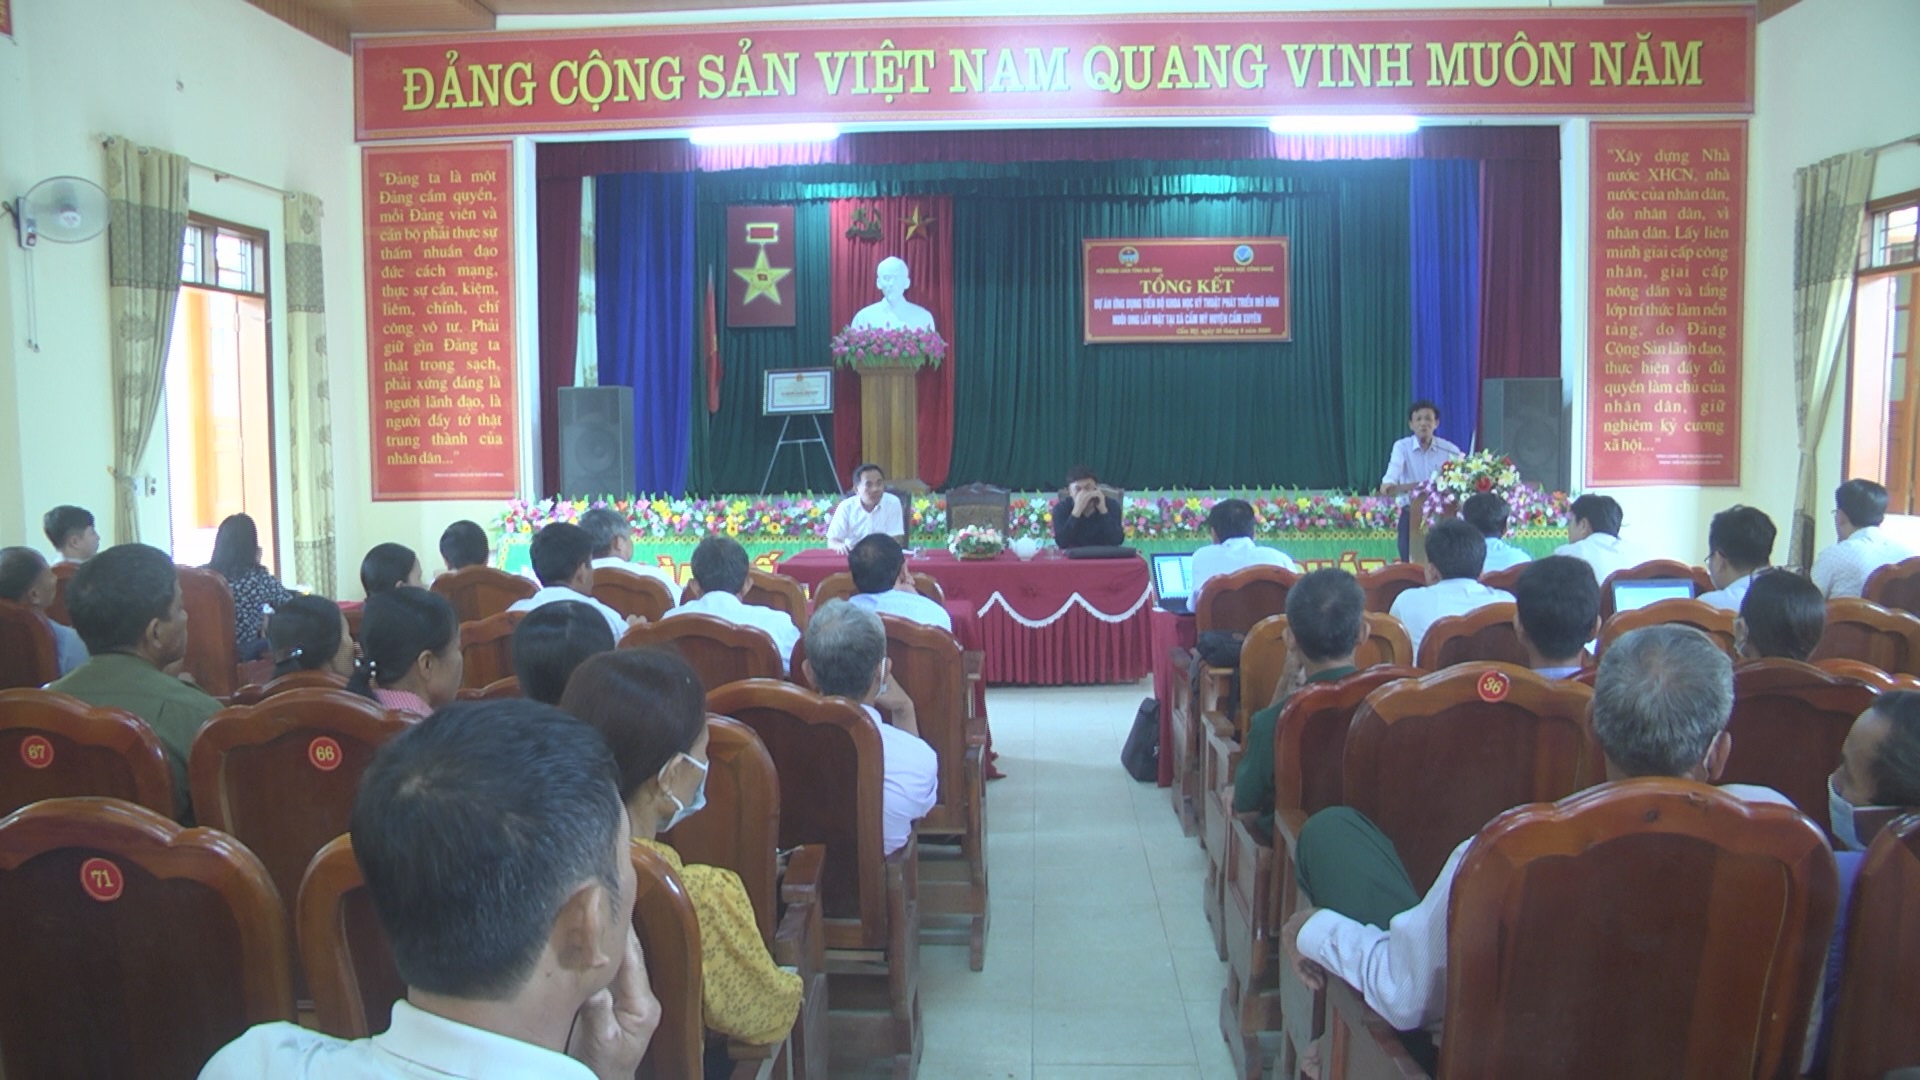 Liên minh công  nông  trí thức trong cách mạng xã hội chủ nghĩa ở Việt  Nam 